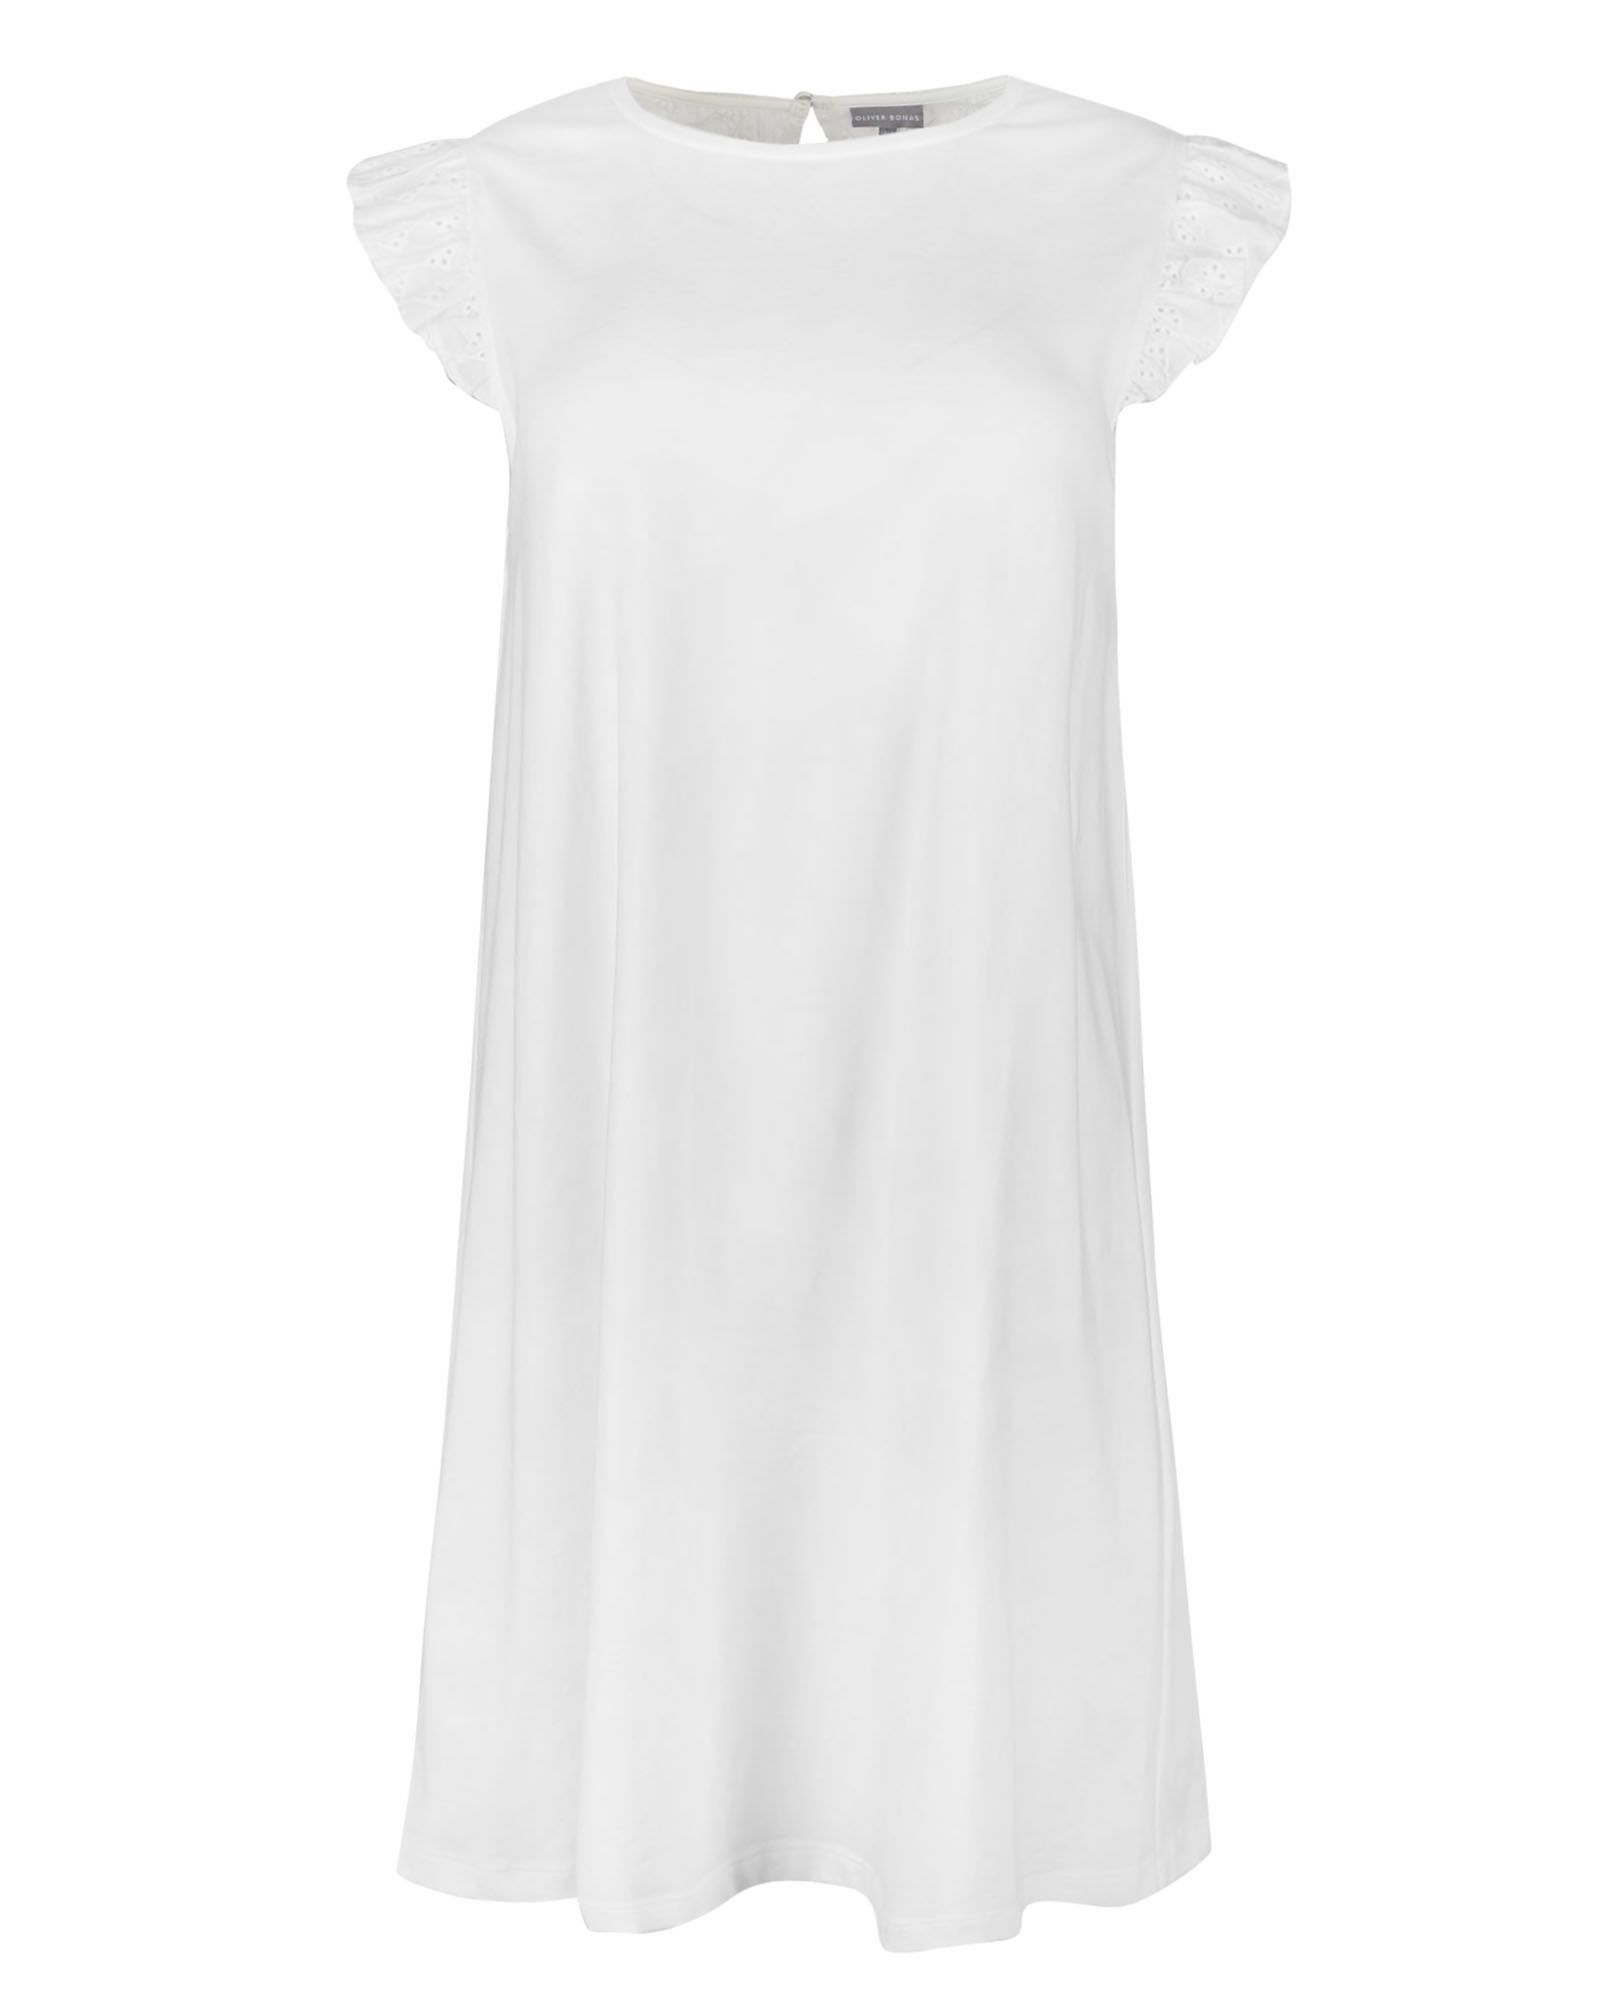 white jersey dress